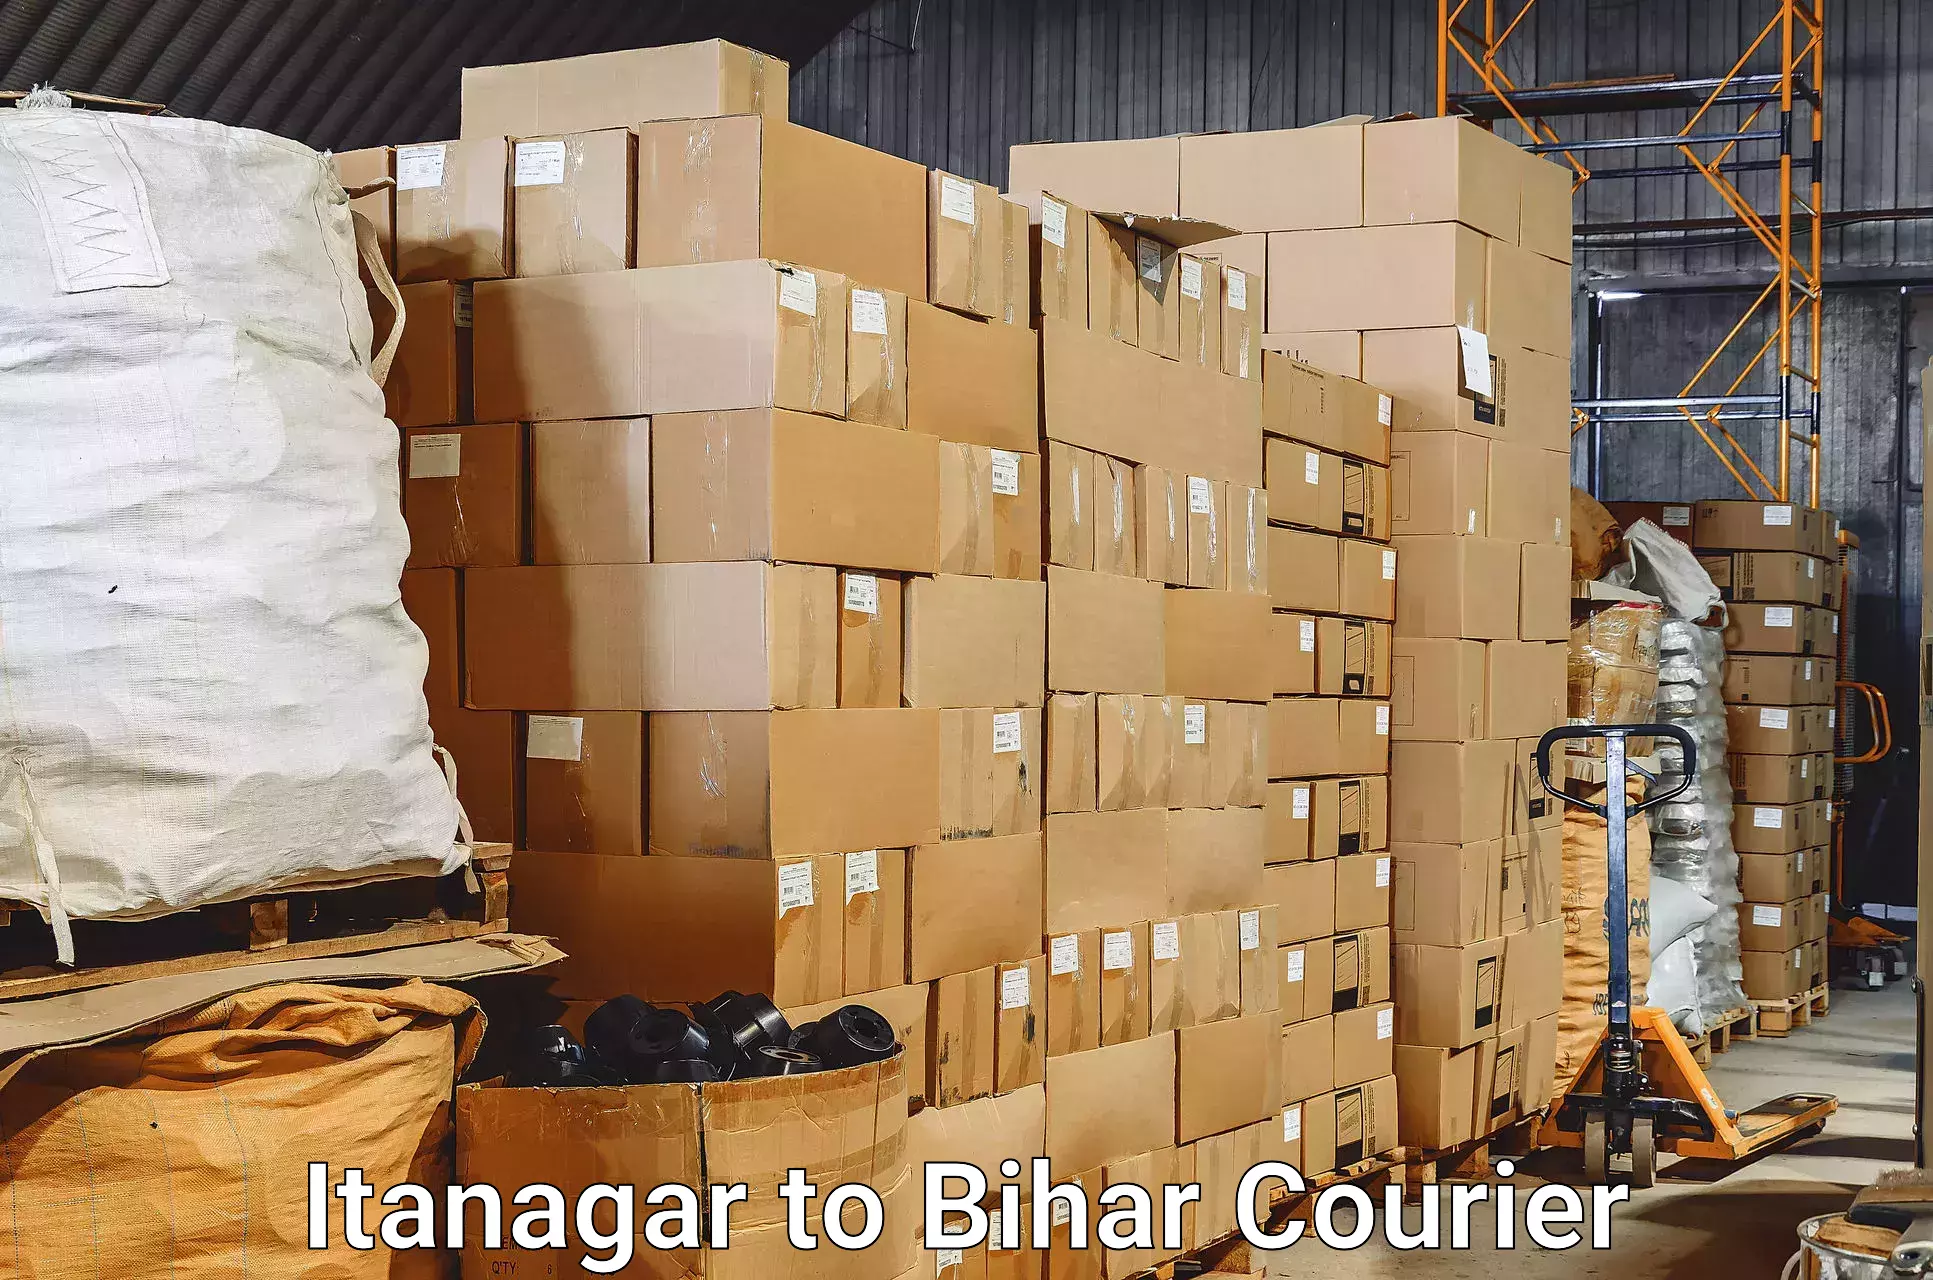 Baggage transport professionals Itanagar to Jiwdhara